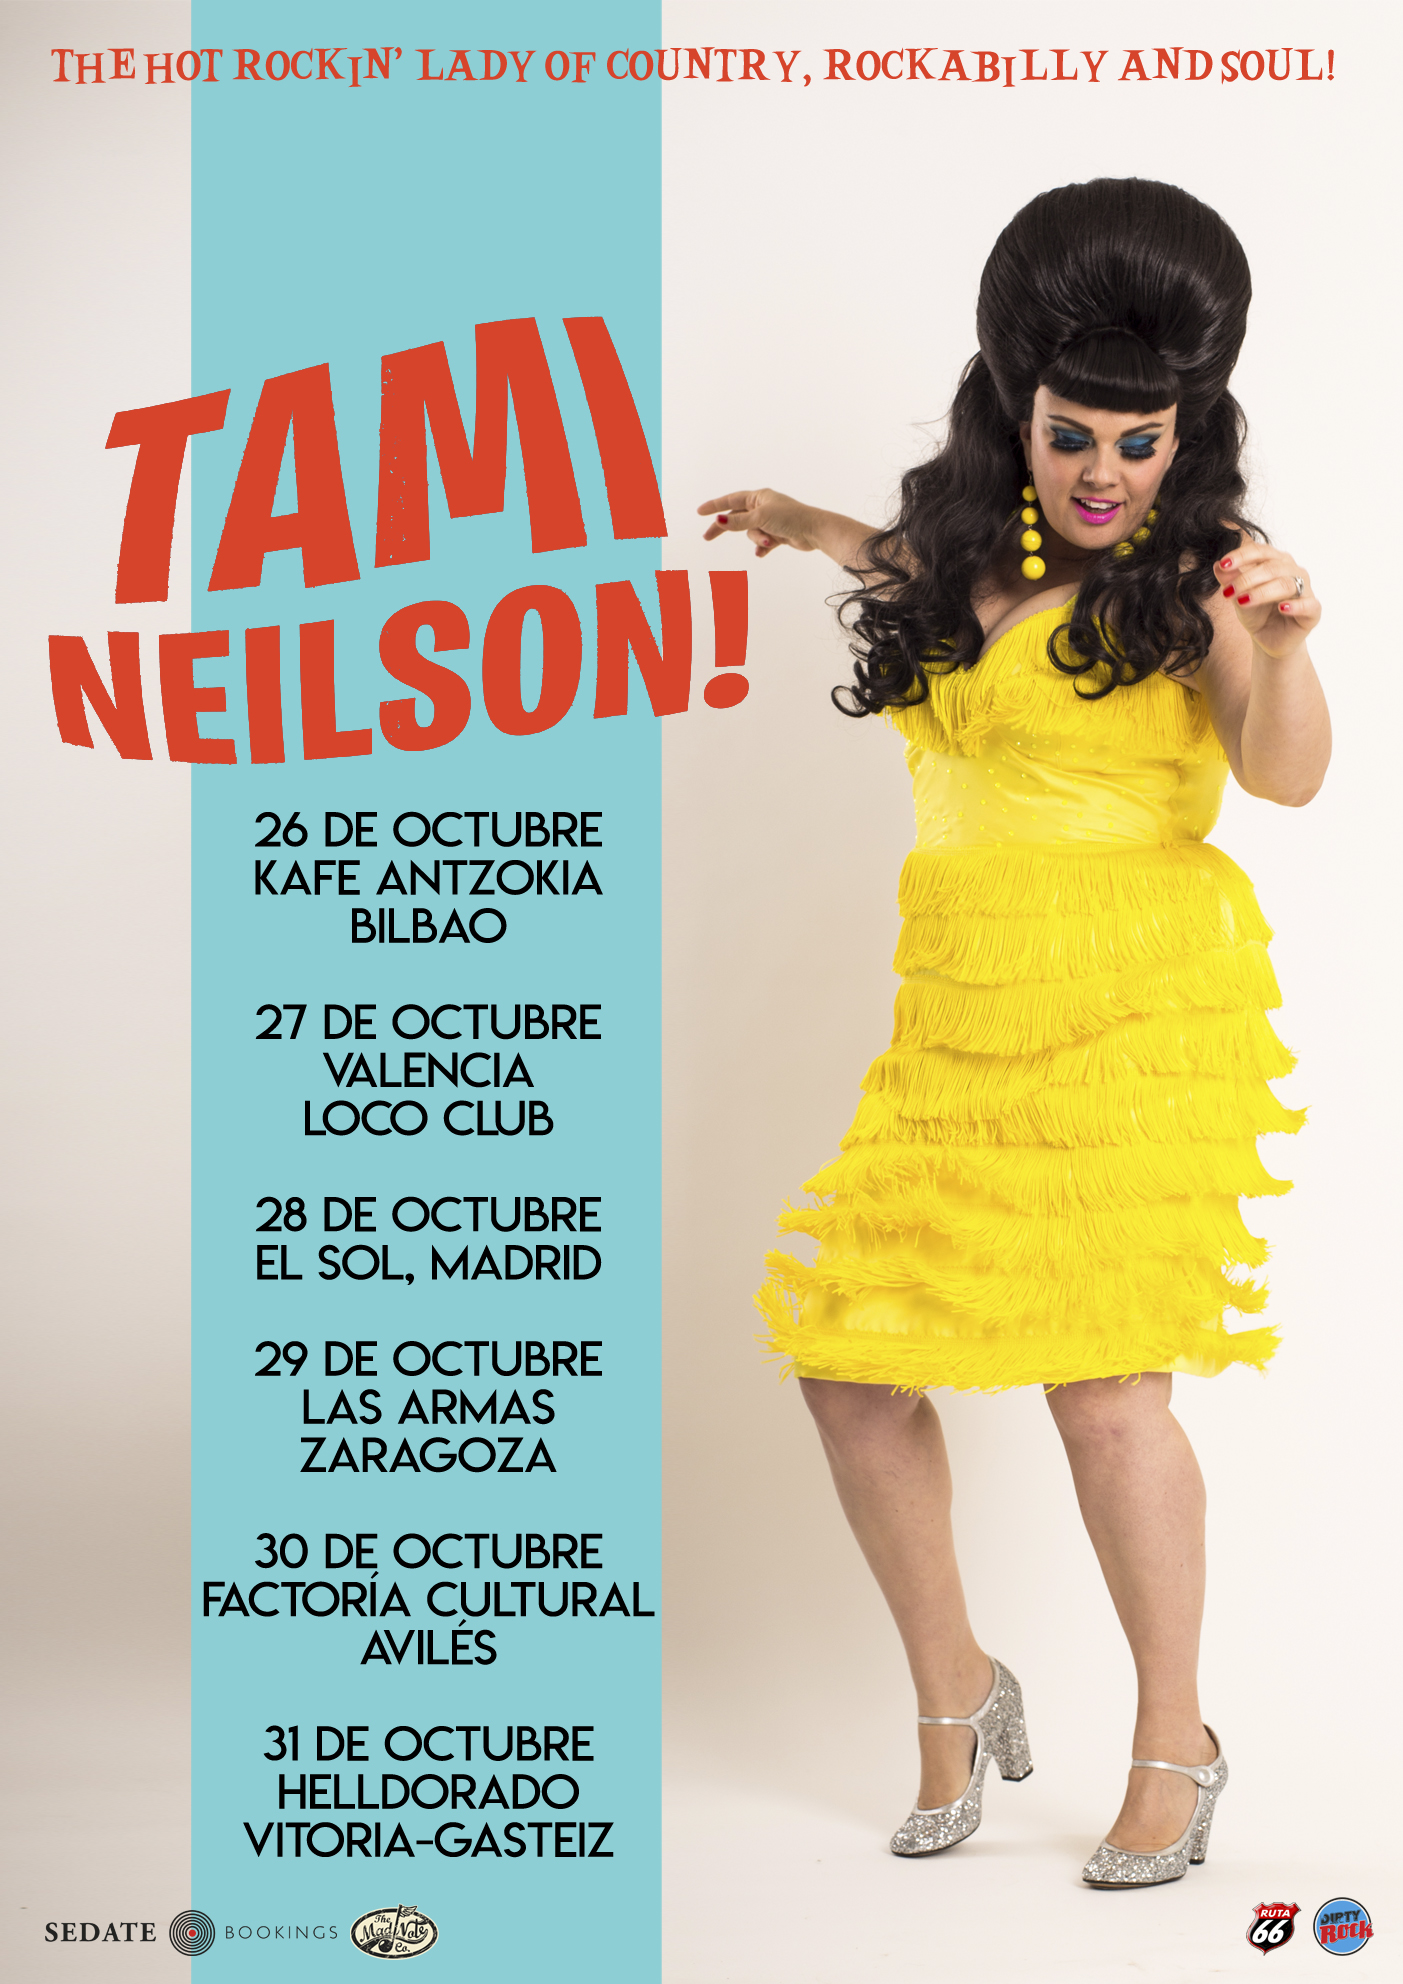 Tami Neilson anuncia concierto en la Factoría Cultural para el 30 de octubre